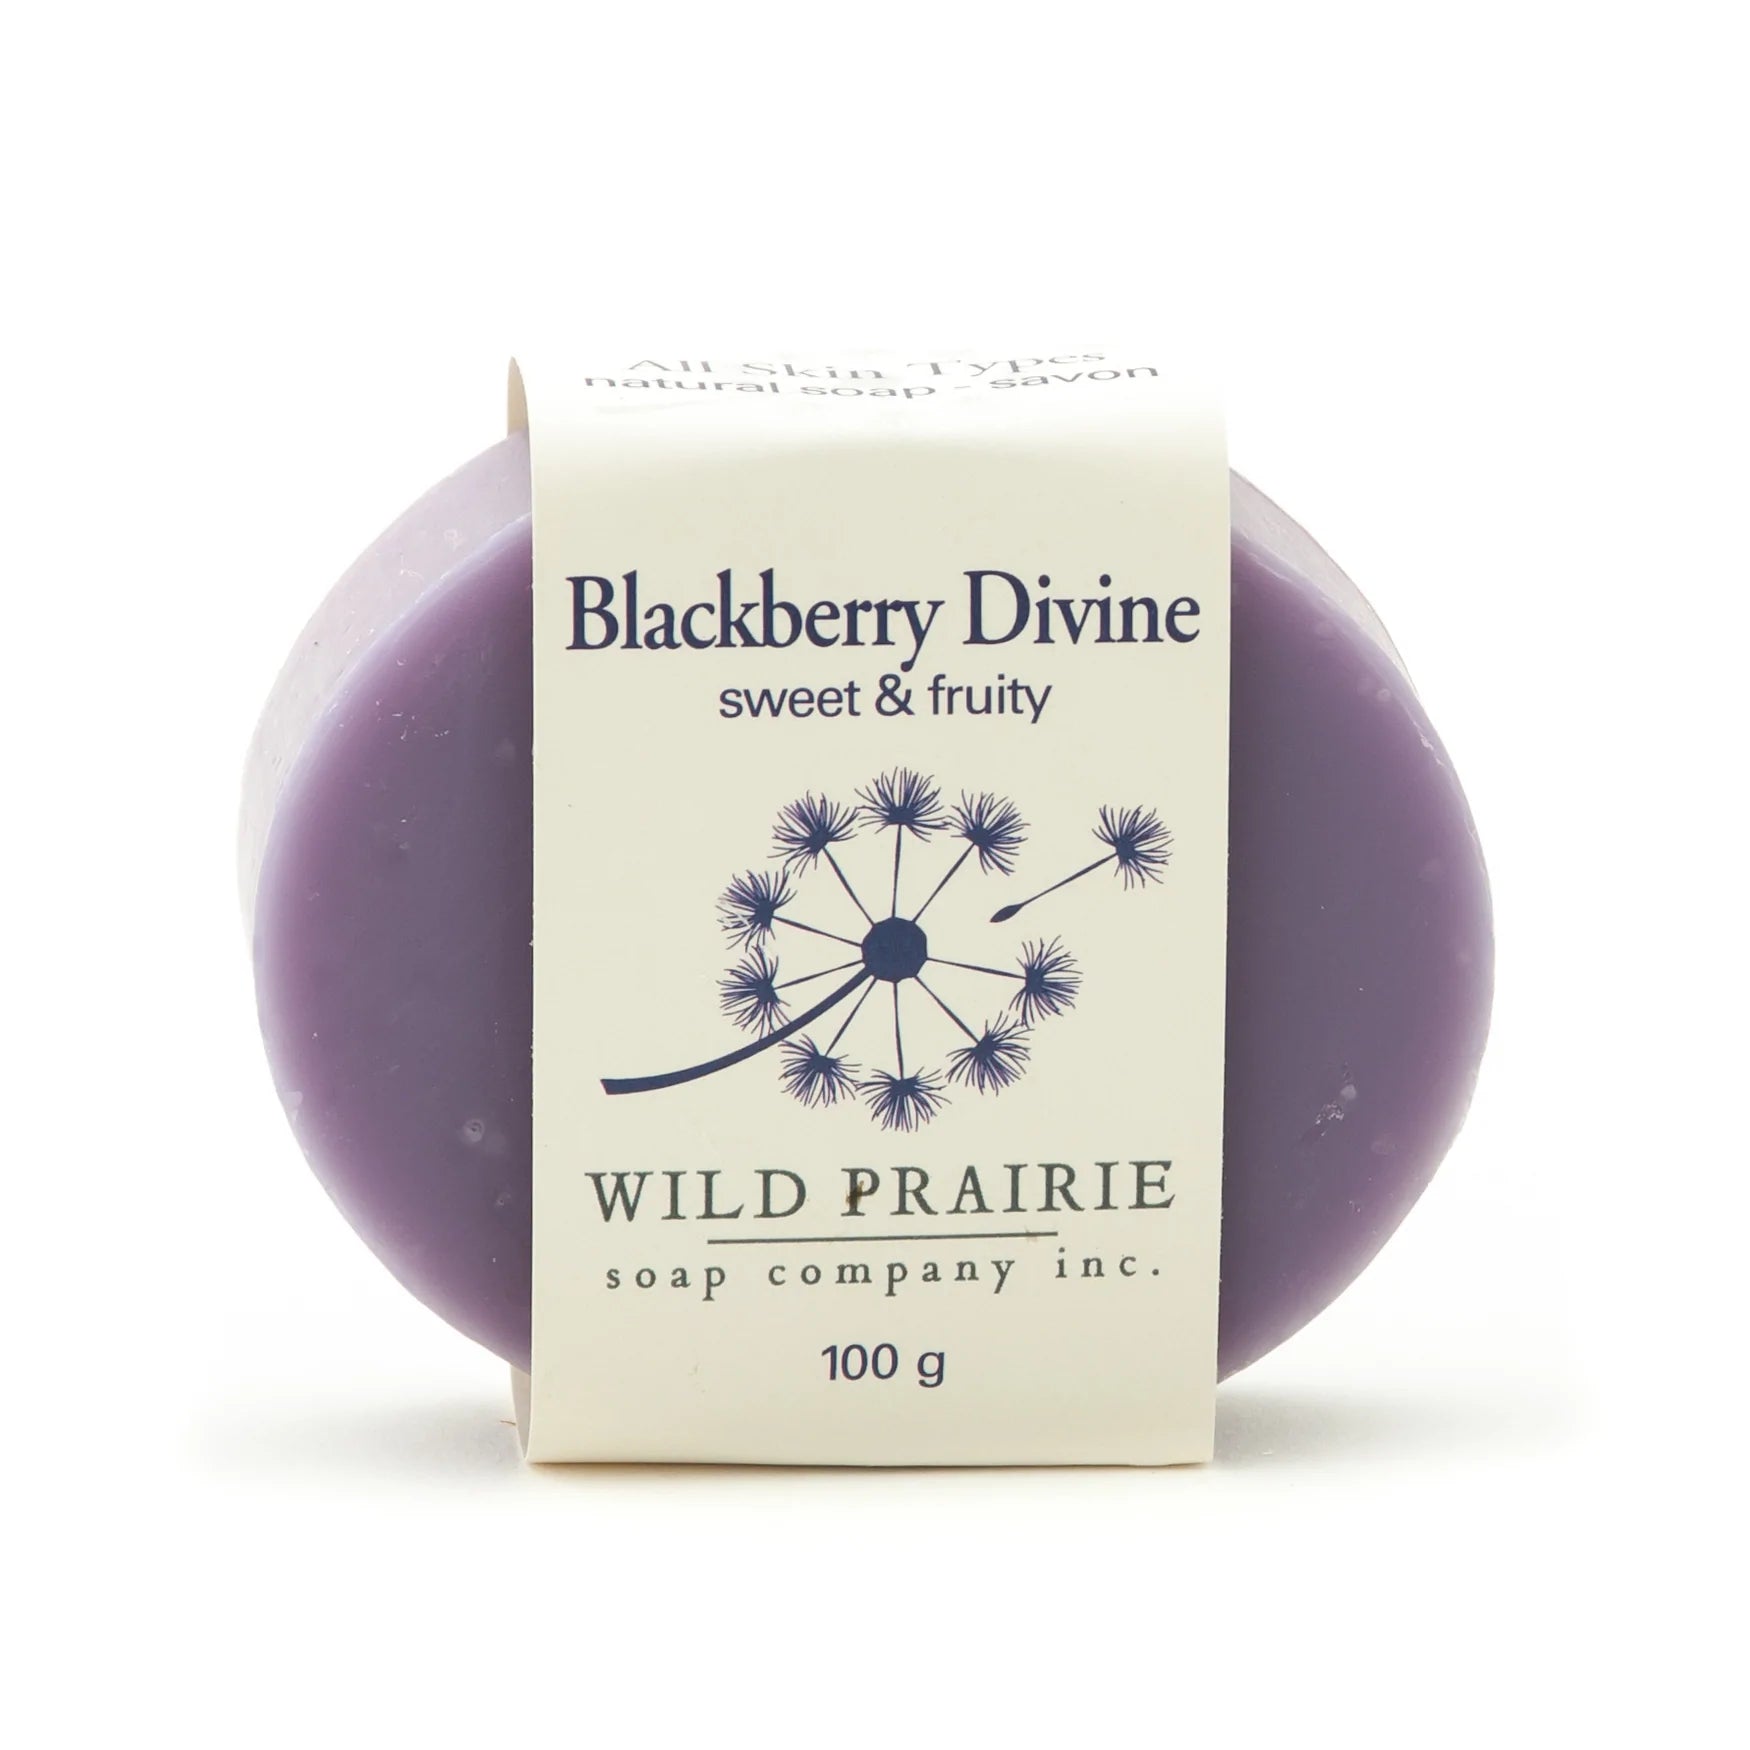 Wild Prairie Blackberry Divine Soap